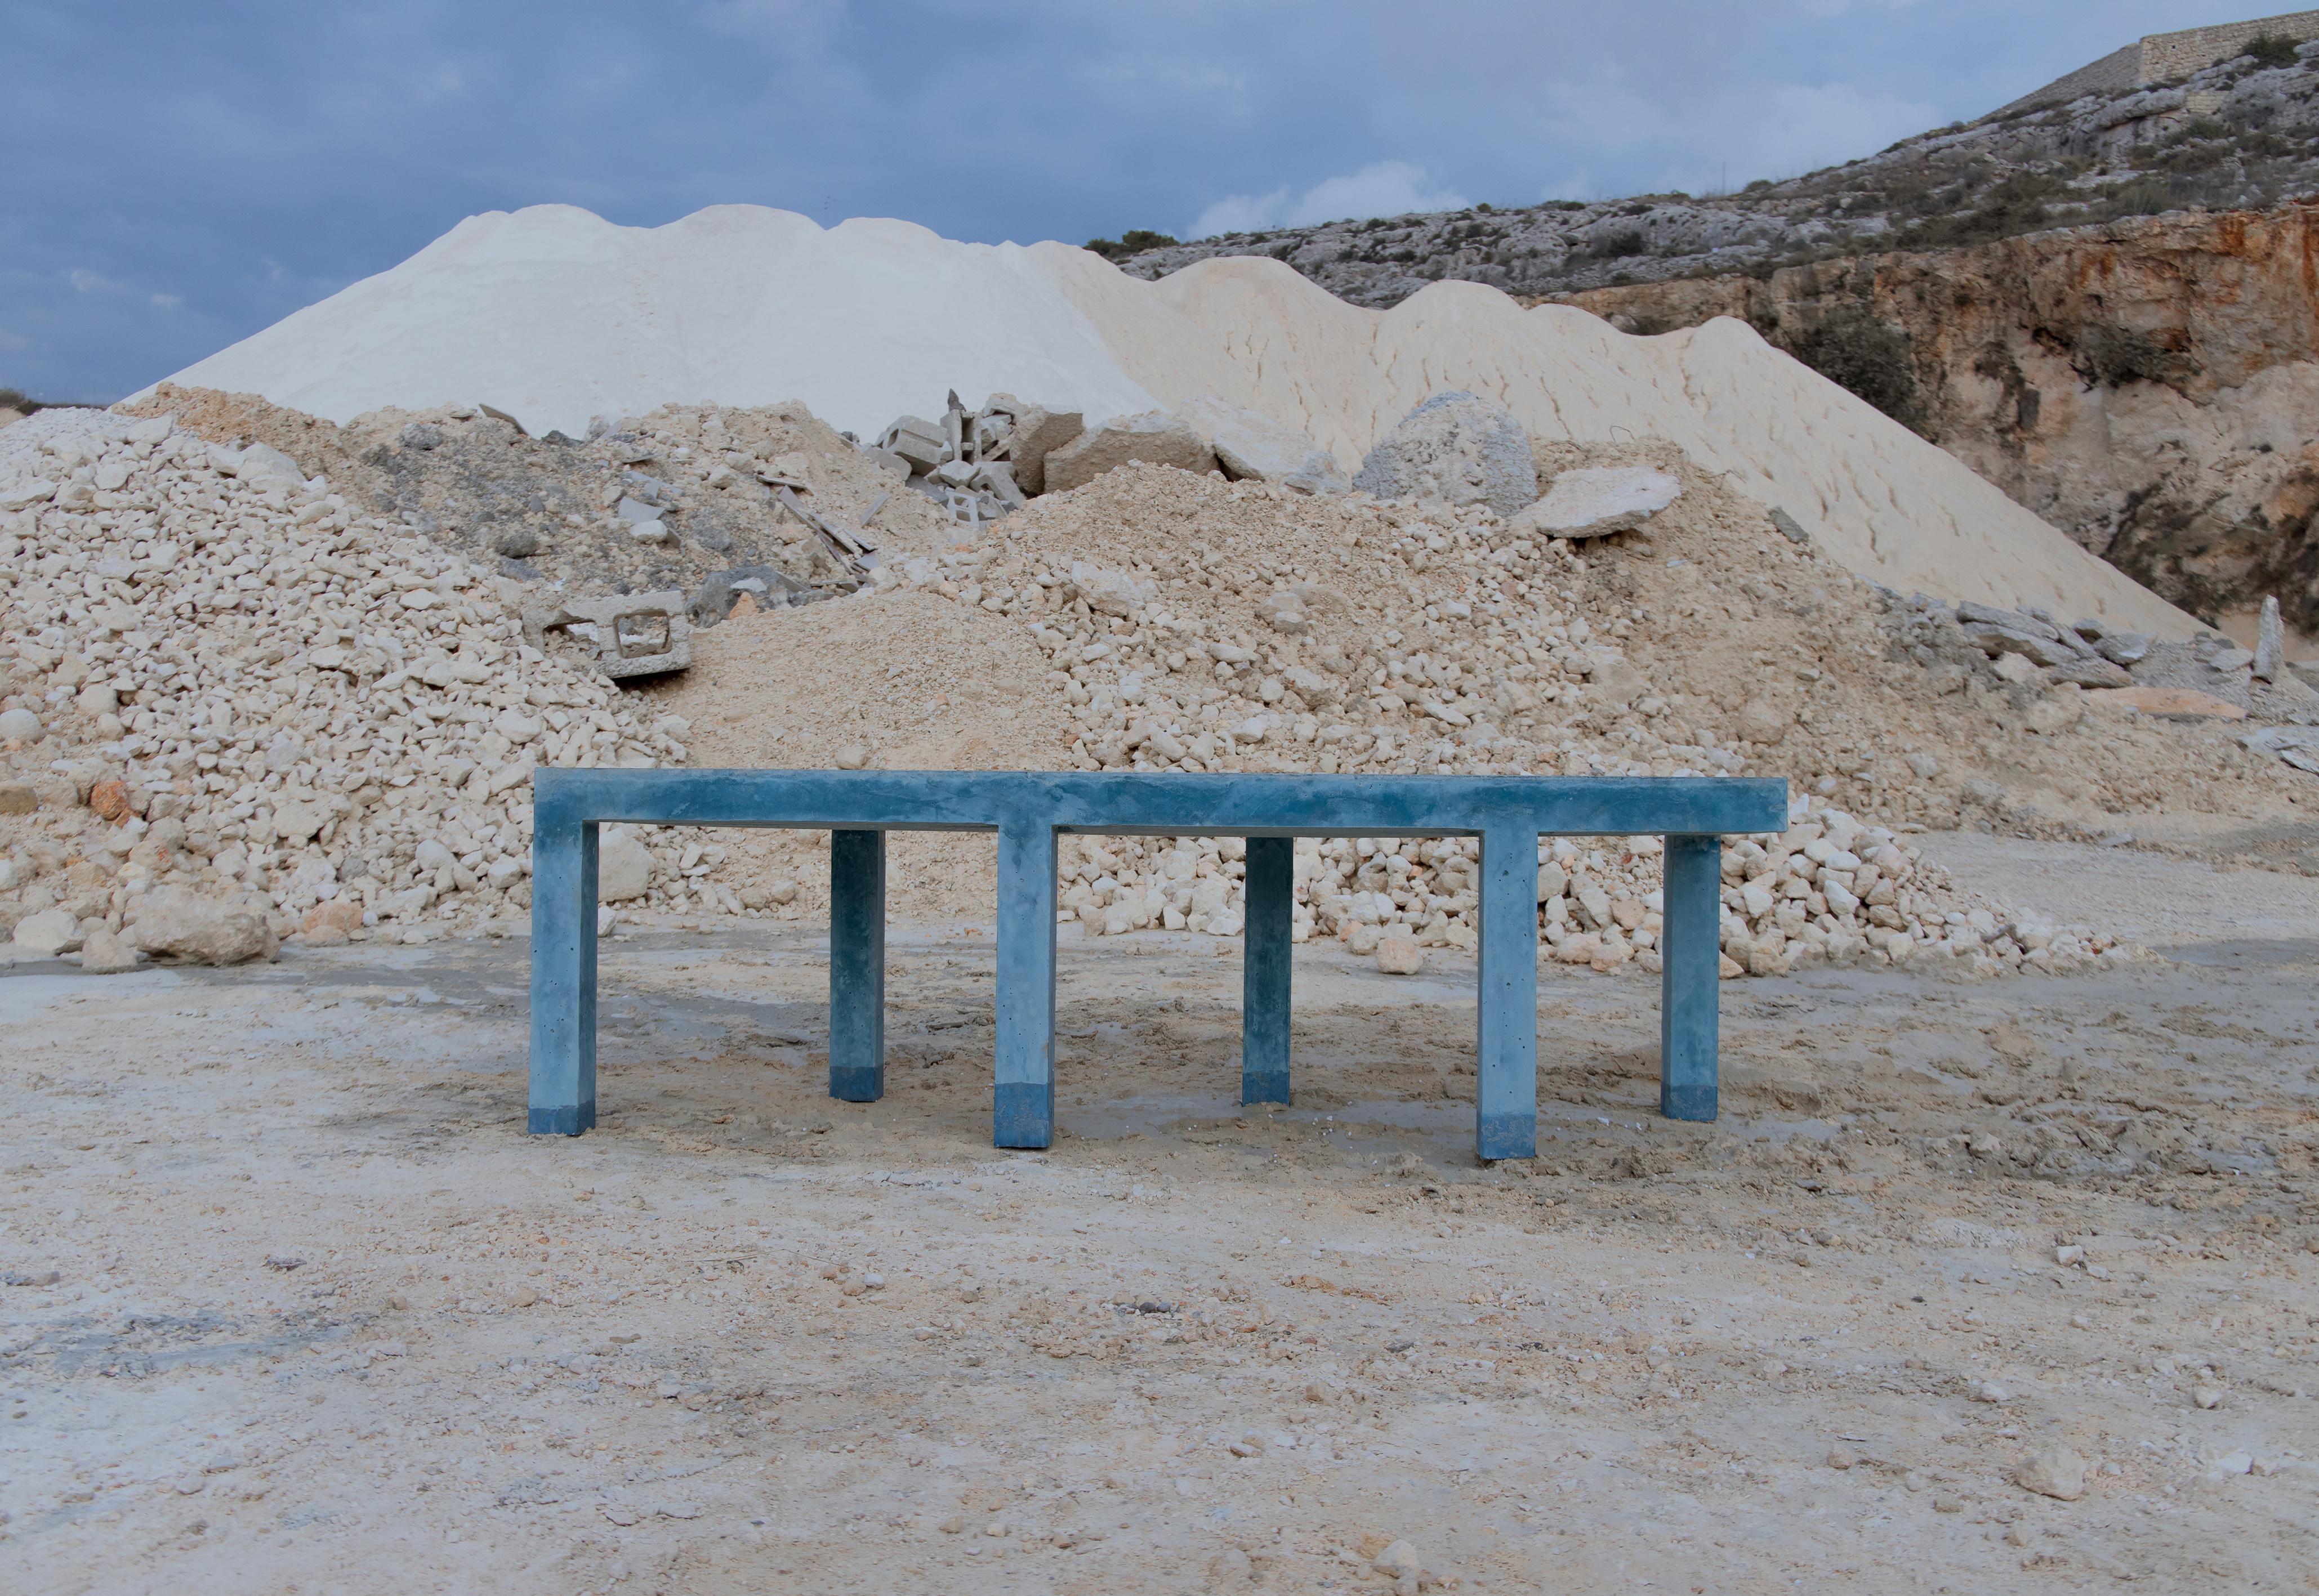 SORGI est un projet de recherche en cours sur les possibilités de circularité à Malte, dont le premier résultat est une collection de mobilier extérieur pour les espaces publics, très critique à l'égard de l'industrie de la construction en plein